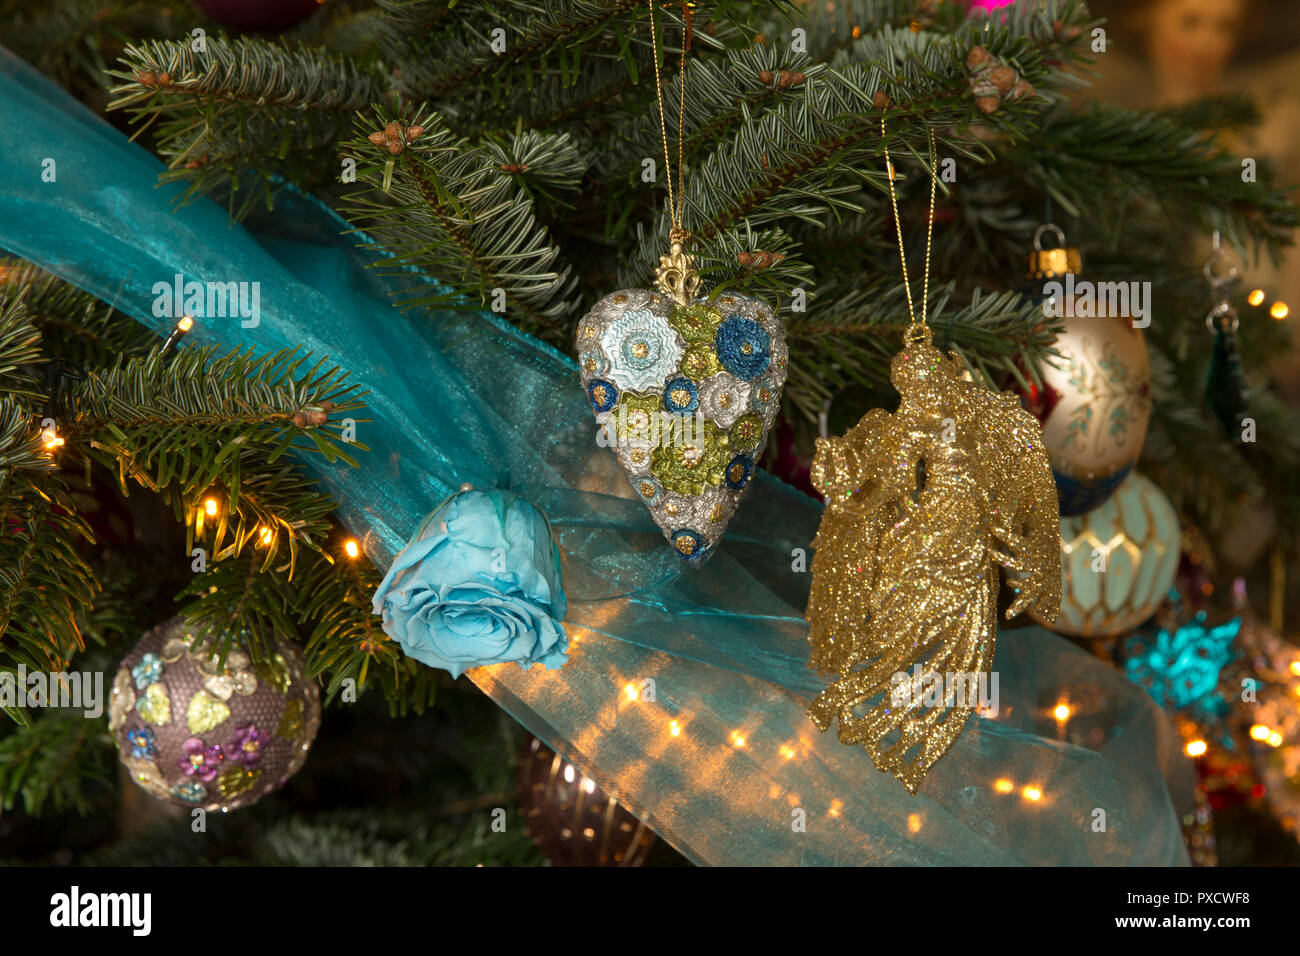 Royaume-uni, Angleterre, dans le Yorkshire, Castle Howard à Noël, Turquoise Dimensions Prix, baubles sur arbre de Noël Banque D'Images